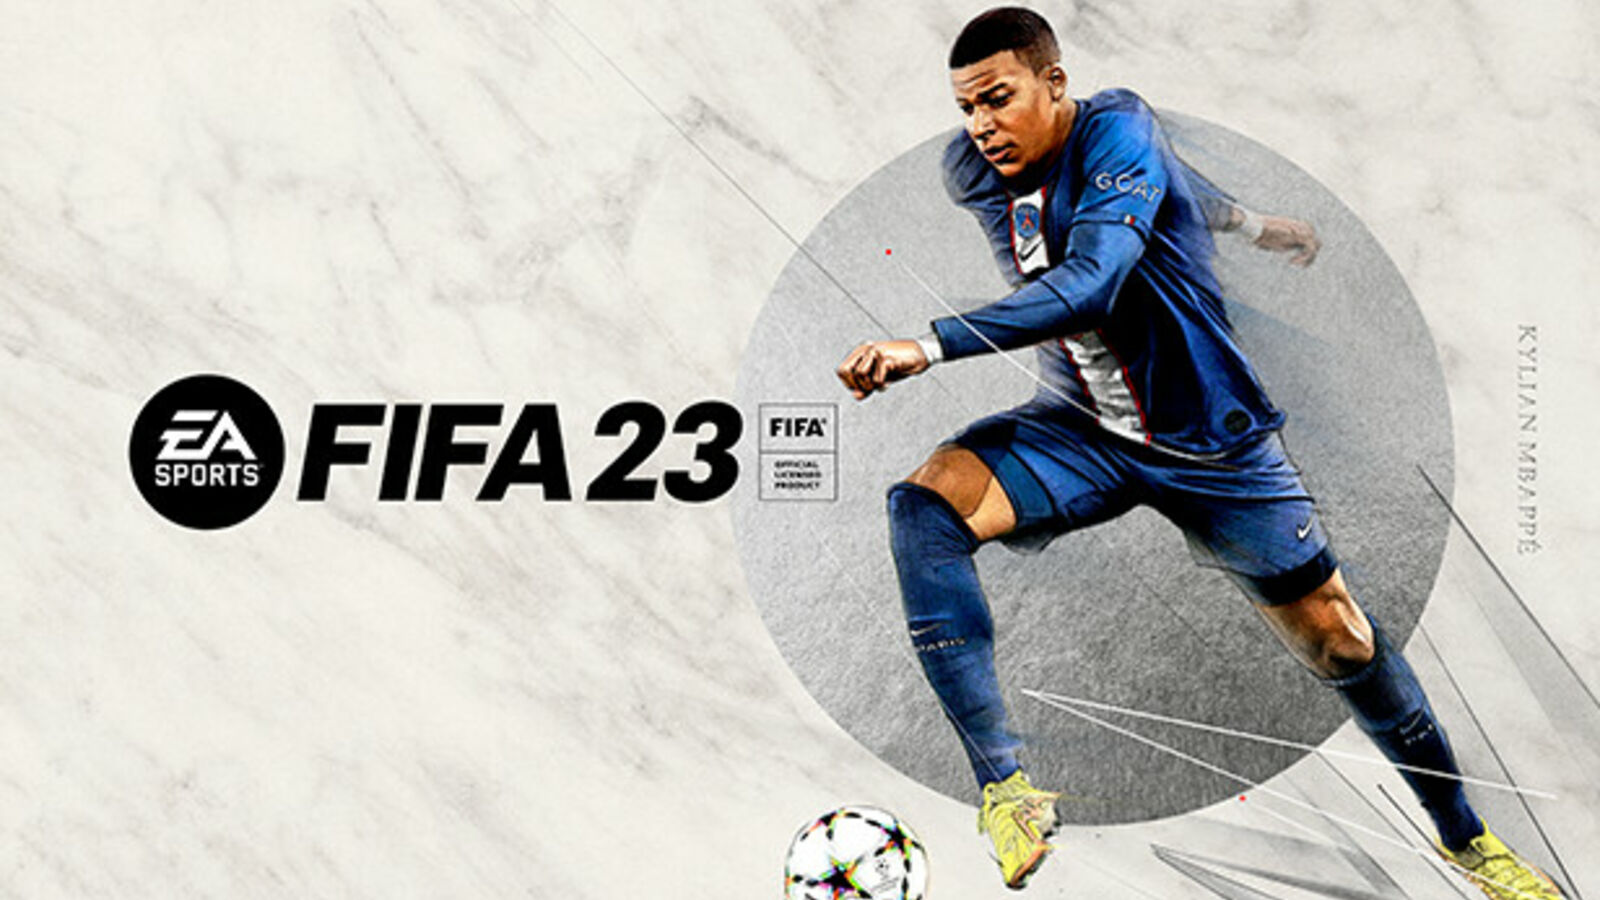 Sprzedaż FIFA 23 wzrosła o 6% w porównaniu z FIFA 22 |  Europejskie miesięczne wykresy